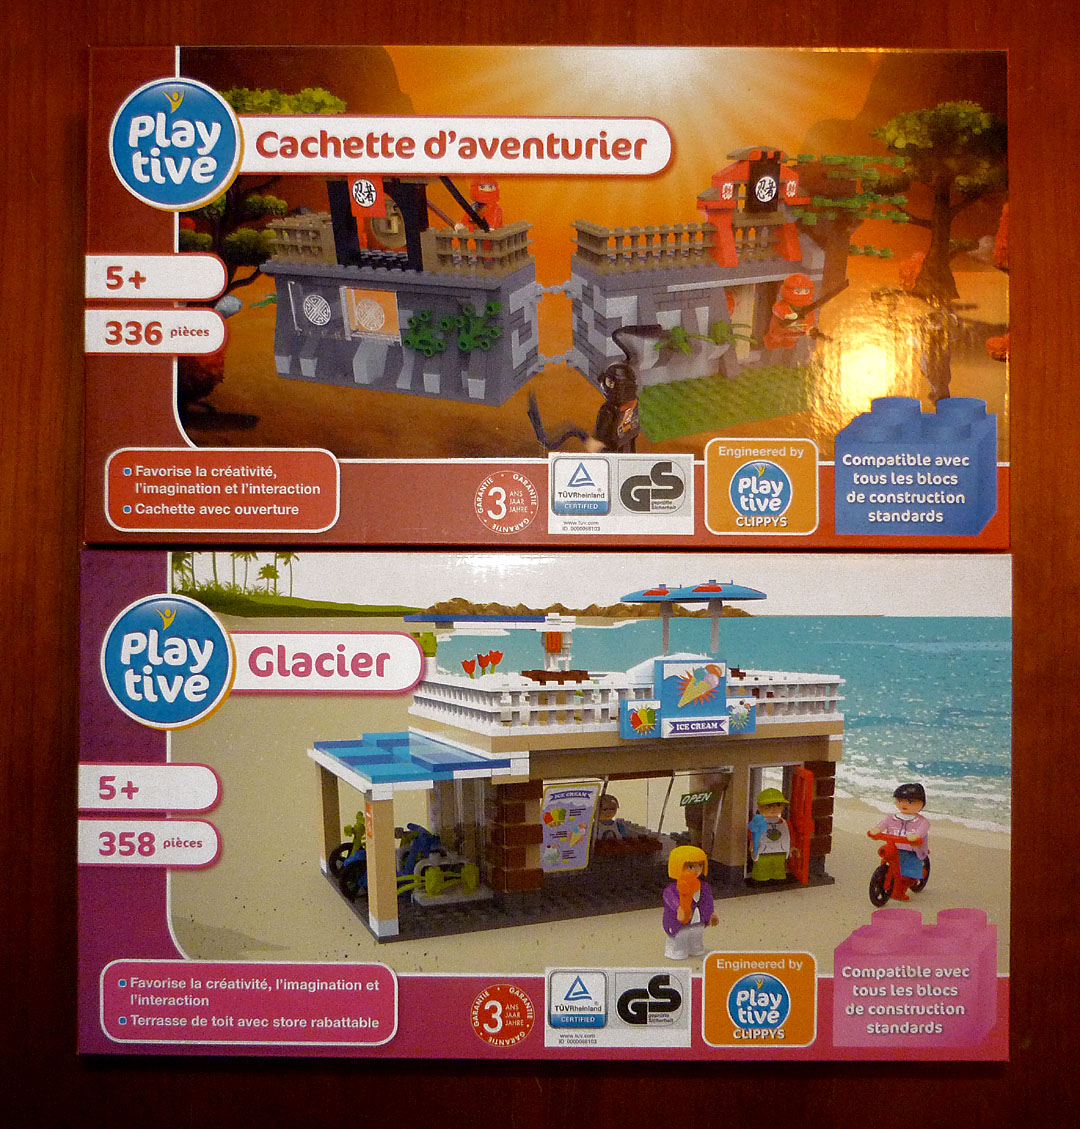 Plaque de présentation pour figurine - Pièce LEGO® 88646 - Super Briques